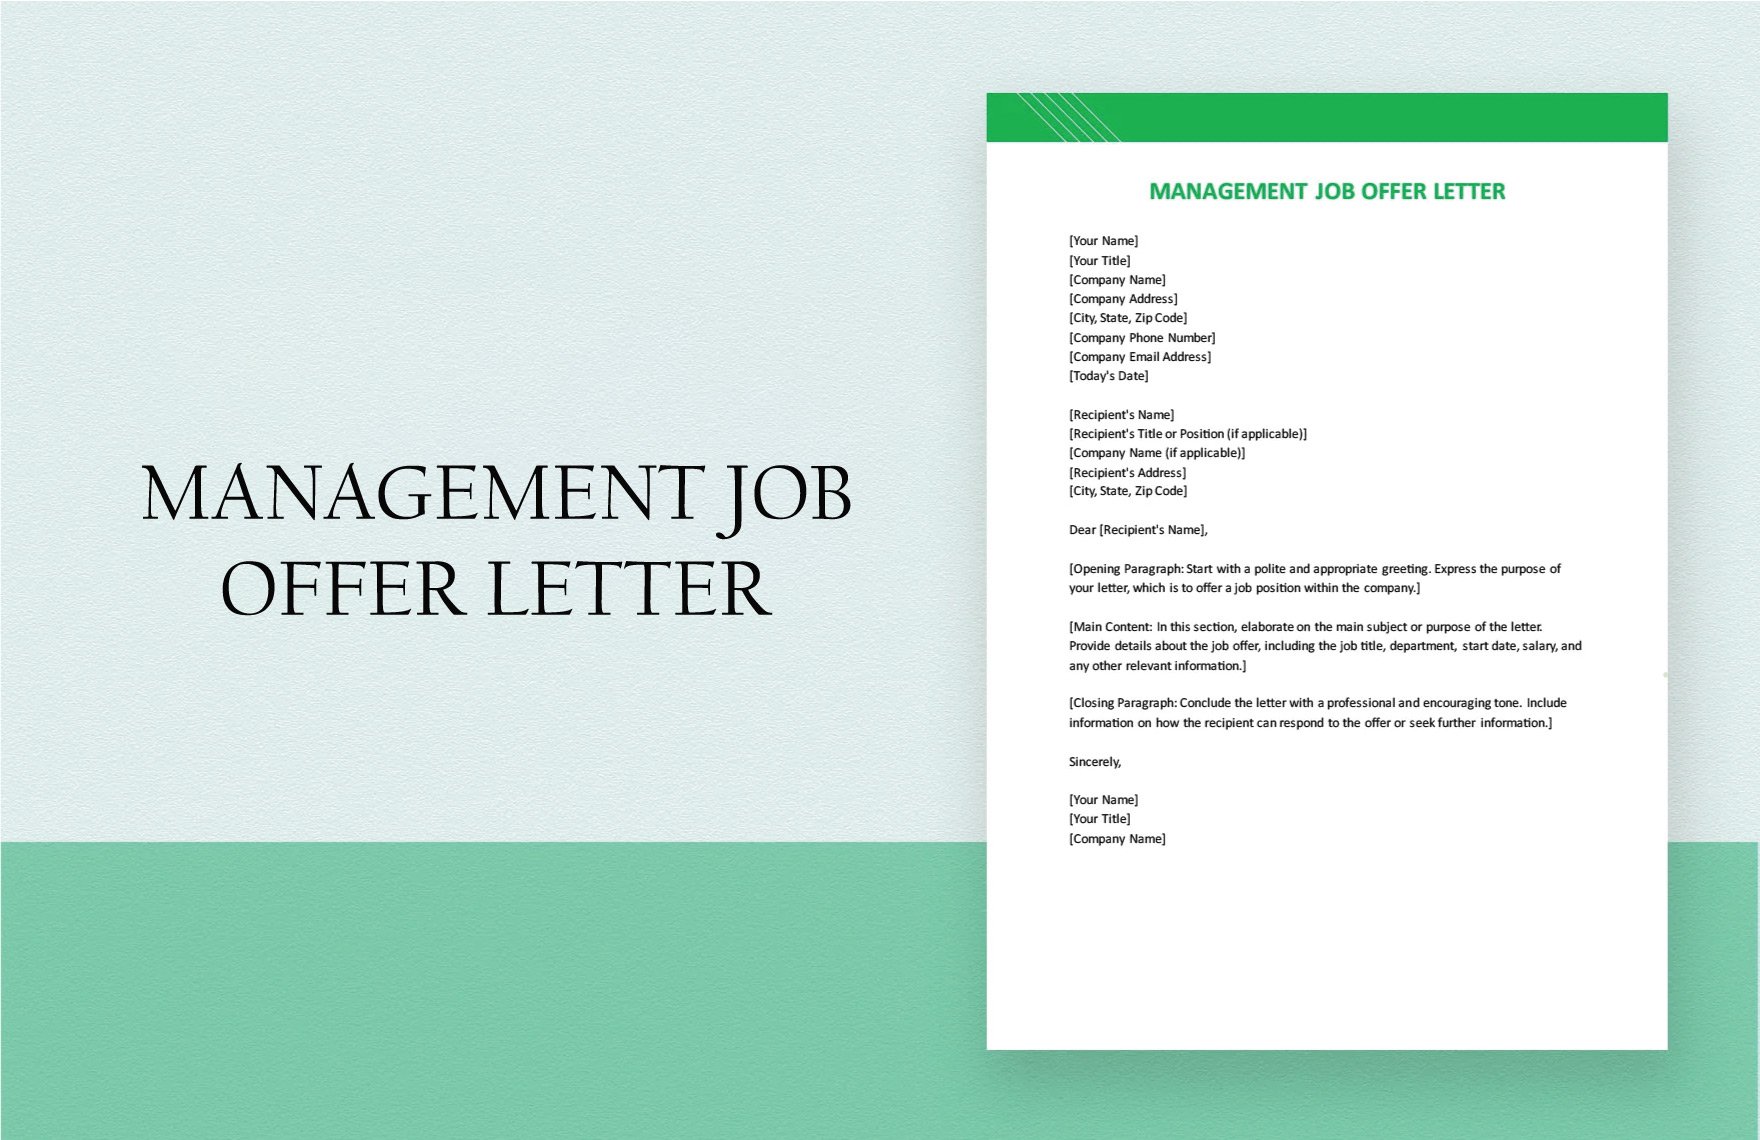 Management Job Offer Letter in Word, Google Docs, PDF